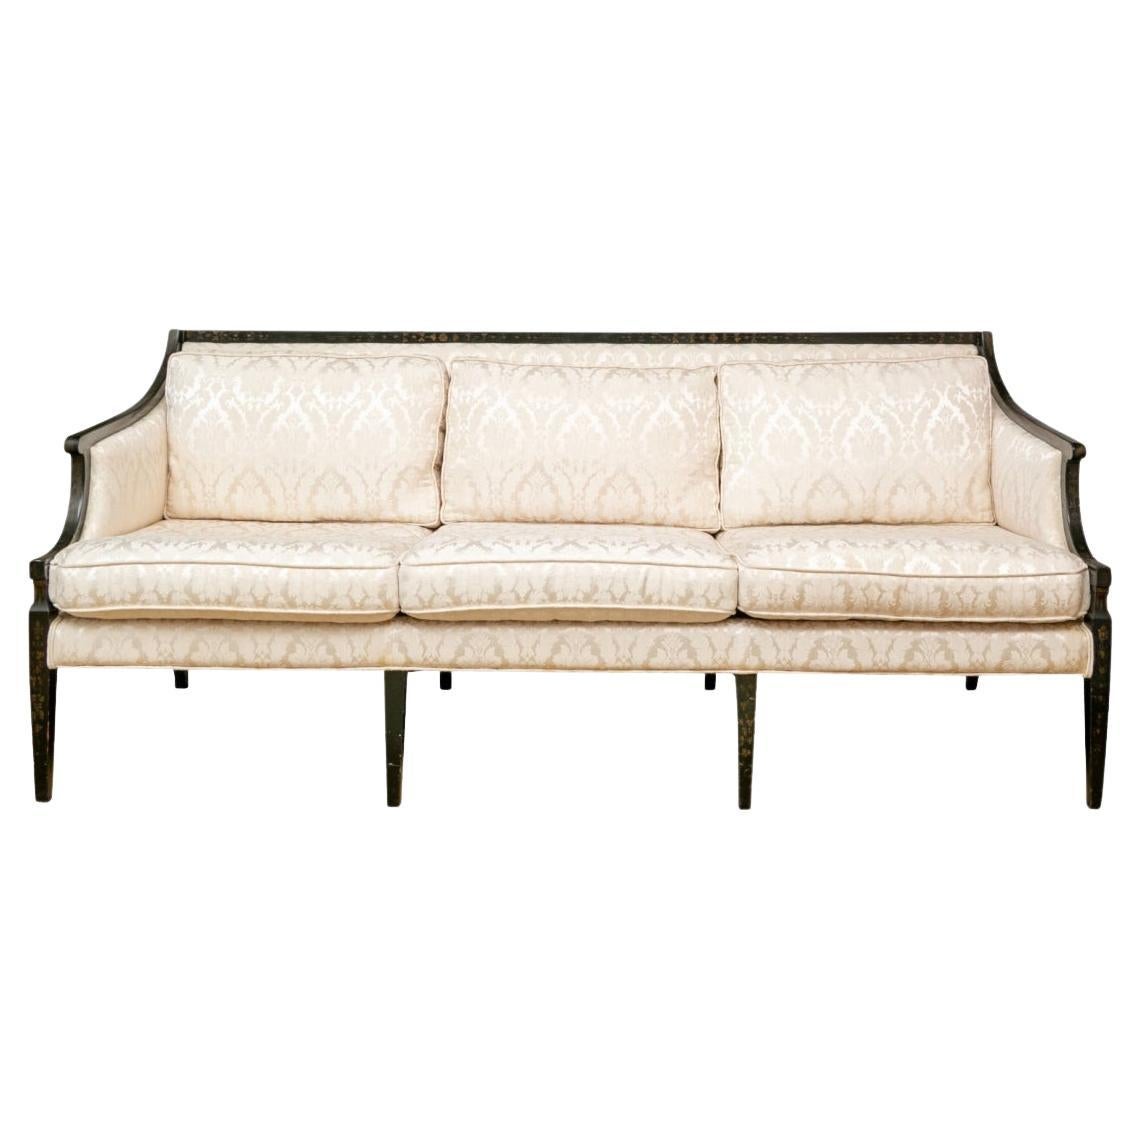 Vintage Hollywood Regency Style Jacquard Upholstered Sofa  For Sale